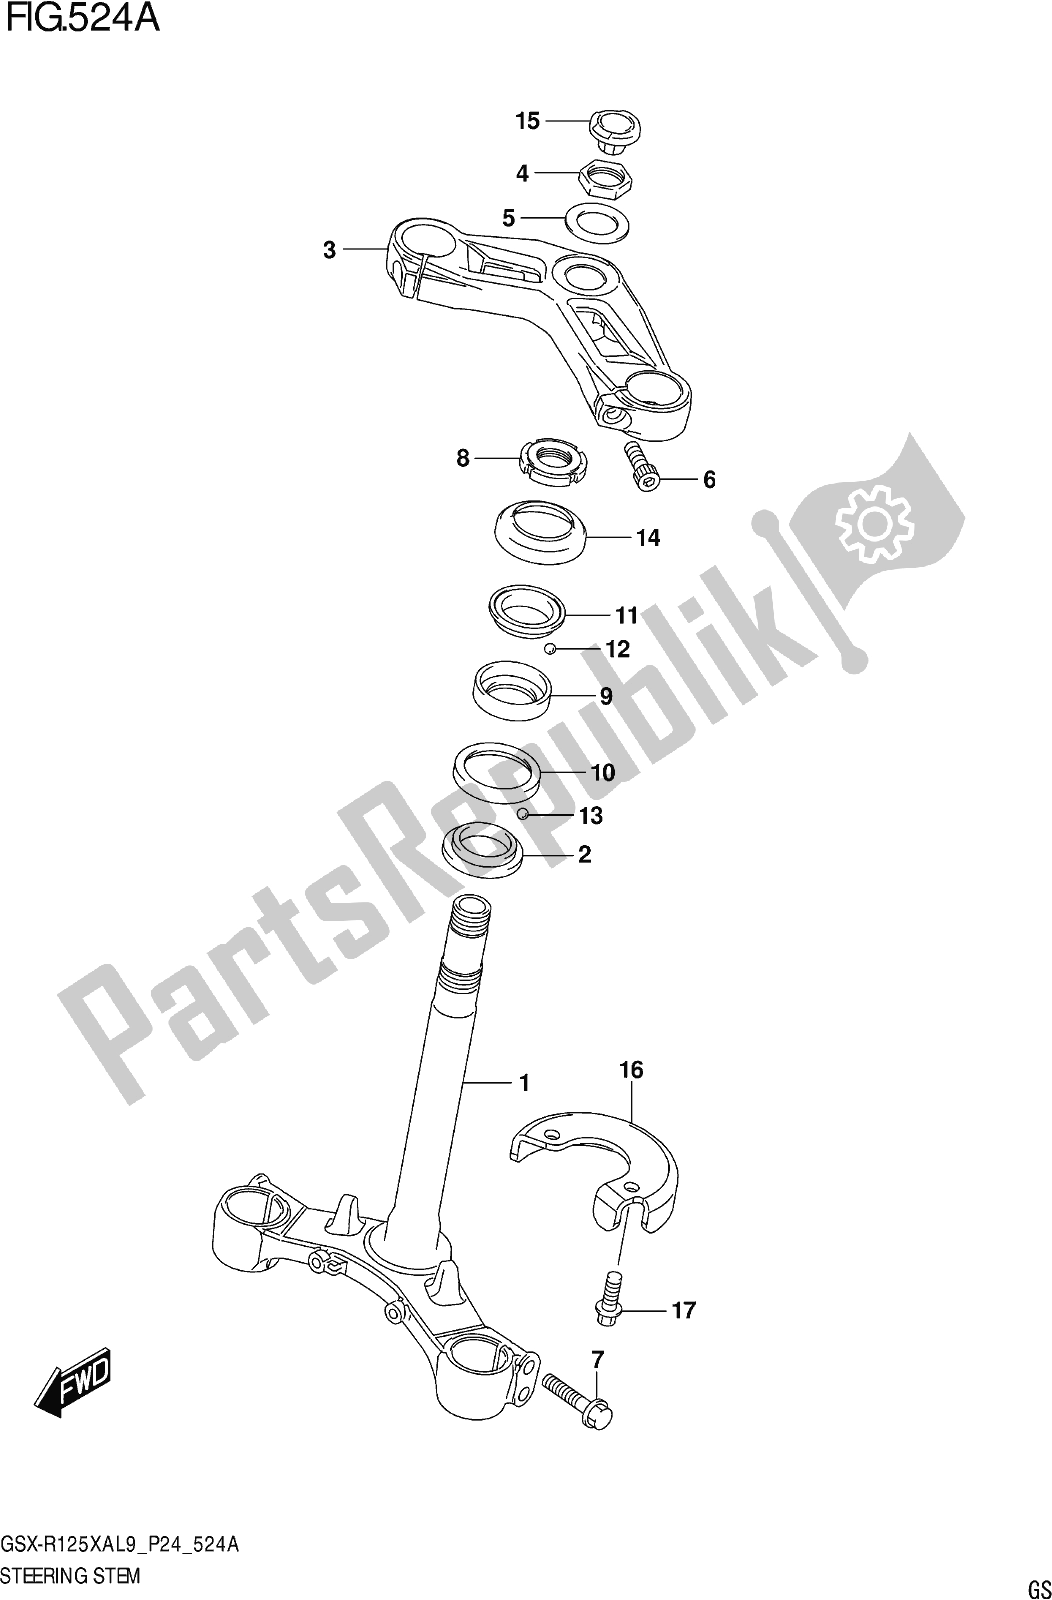 Alle onderdelen voor de Fig. 524a Steering Stem van de Suzuki Gsx-r 125 XA 2019